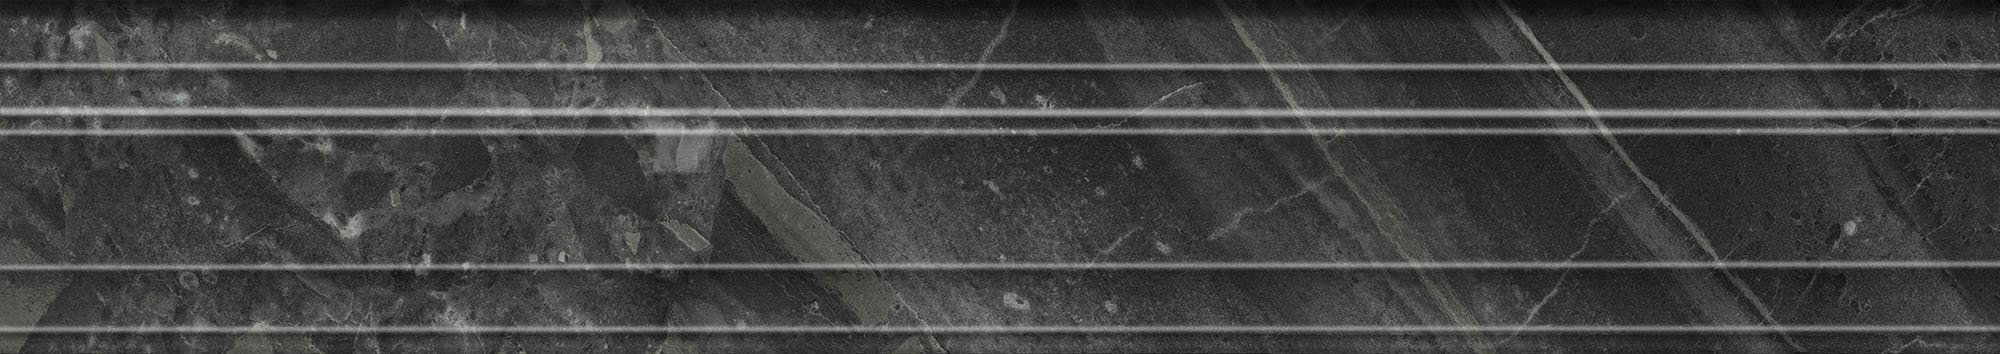 BLF020R Бордюр Риальто Багет Риальто чёрный глянцевый обрезной 40x7.3x2.7 - фото 3